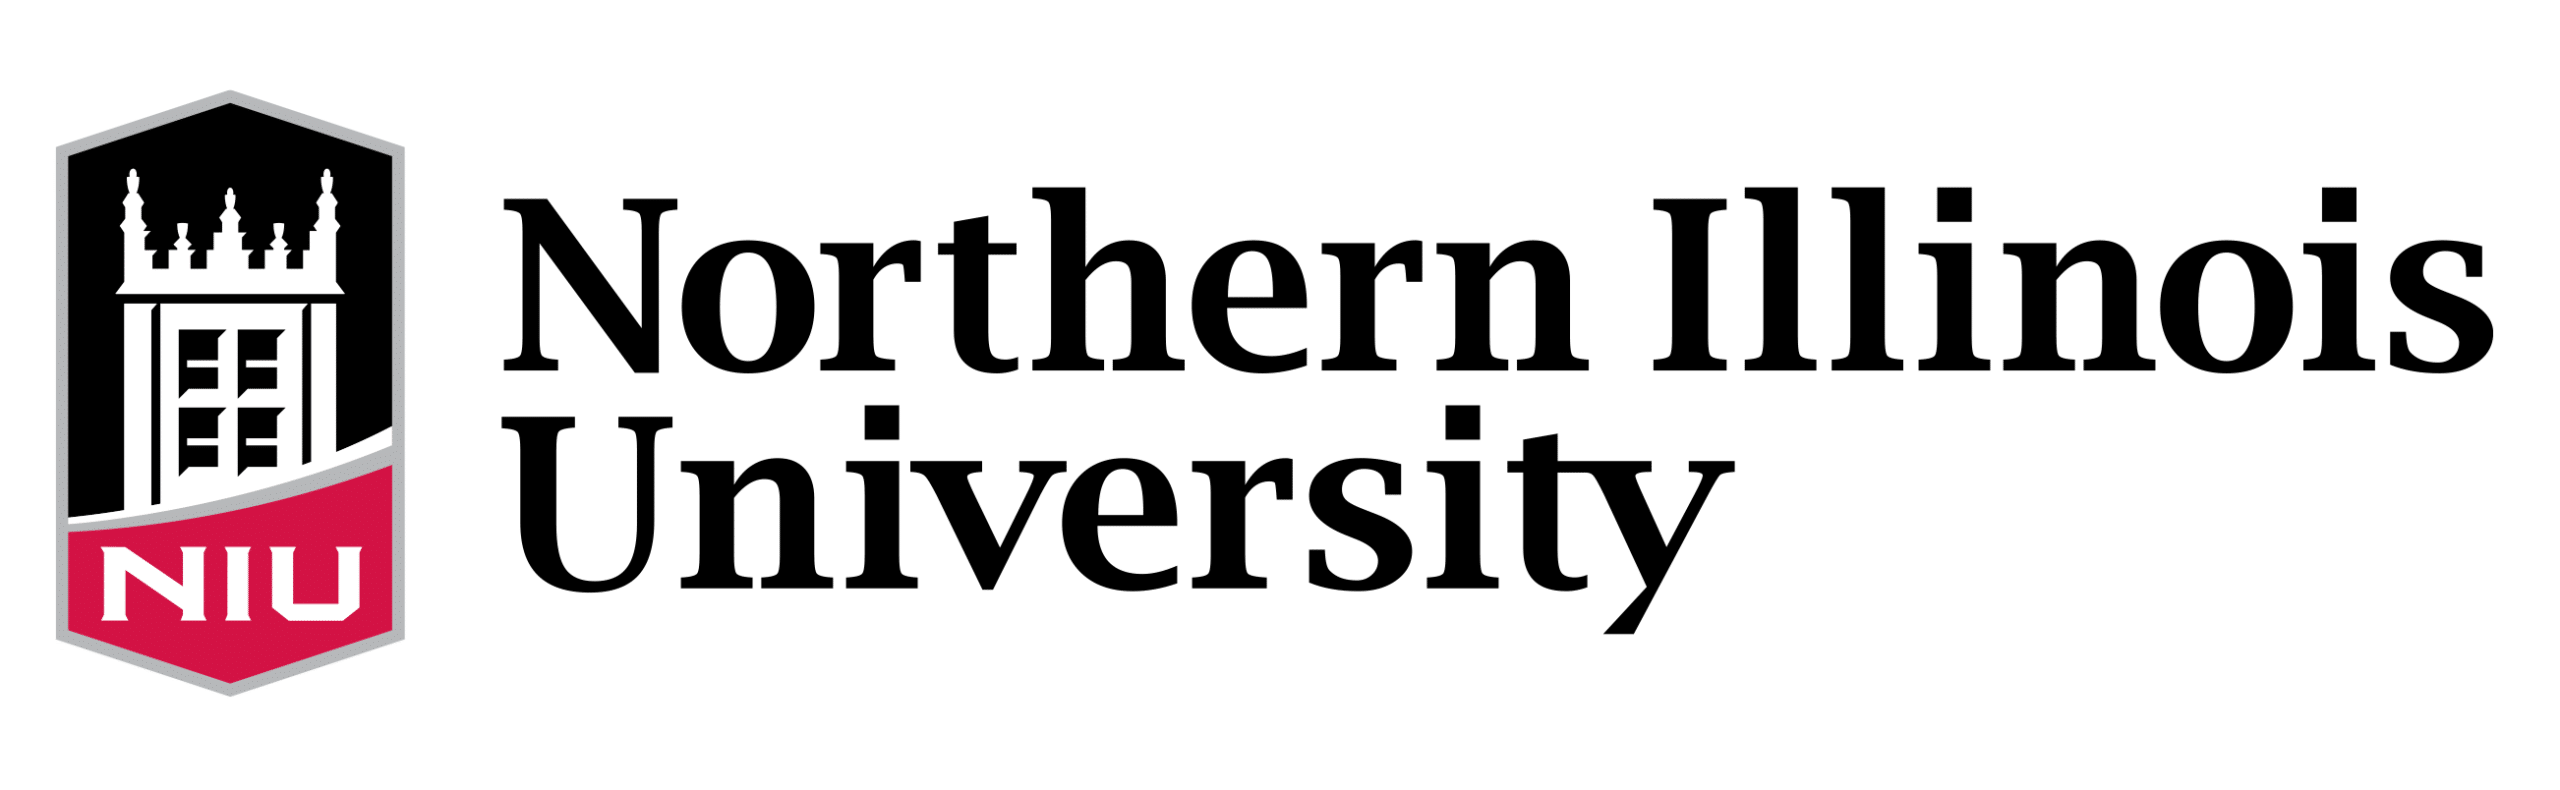 Northern_Illinois_University